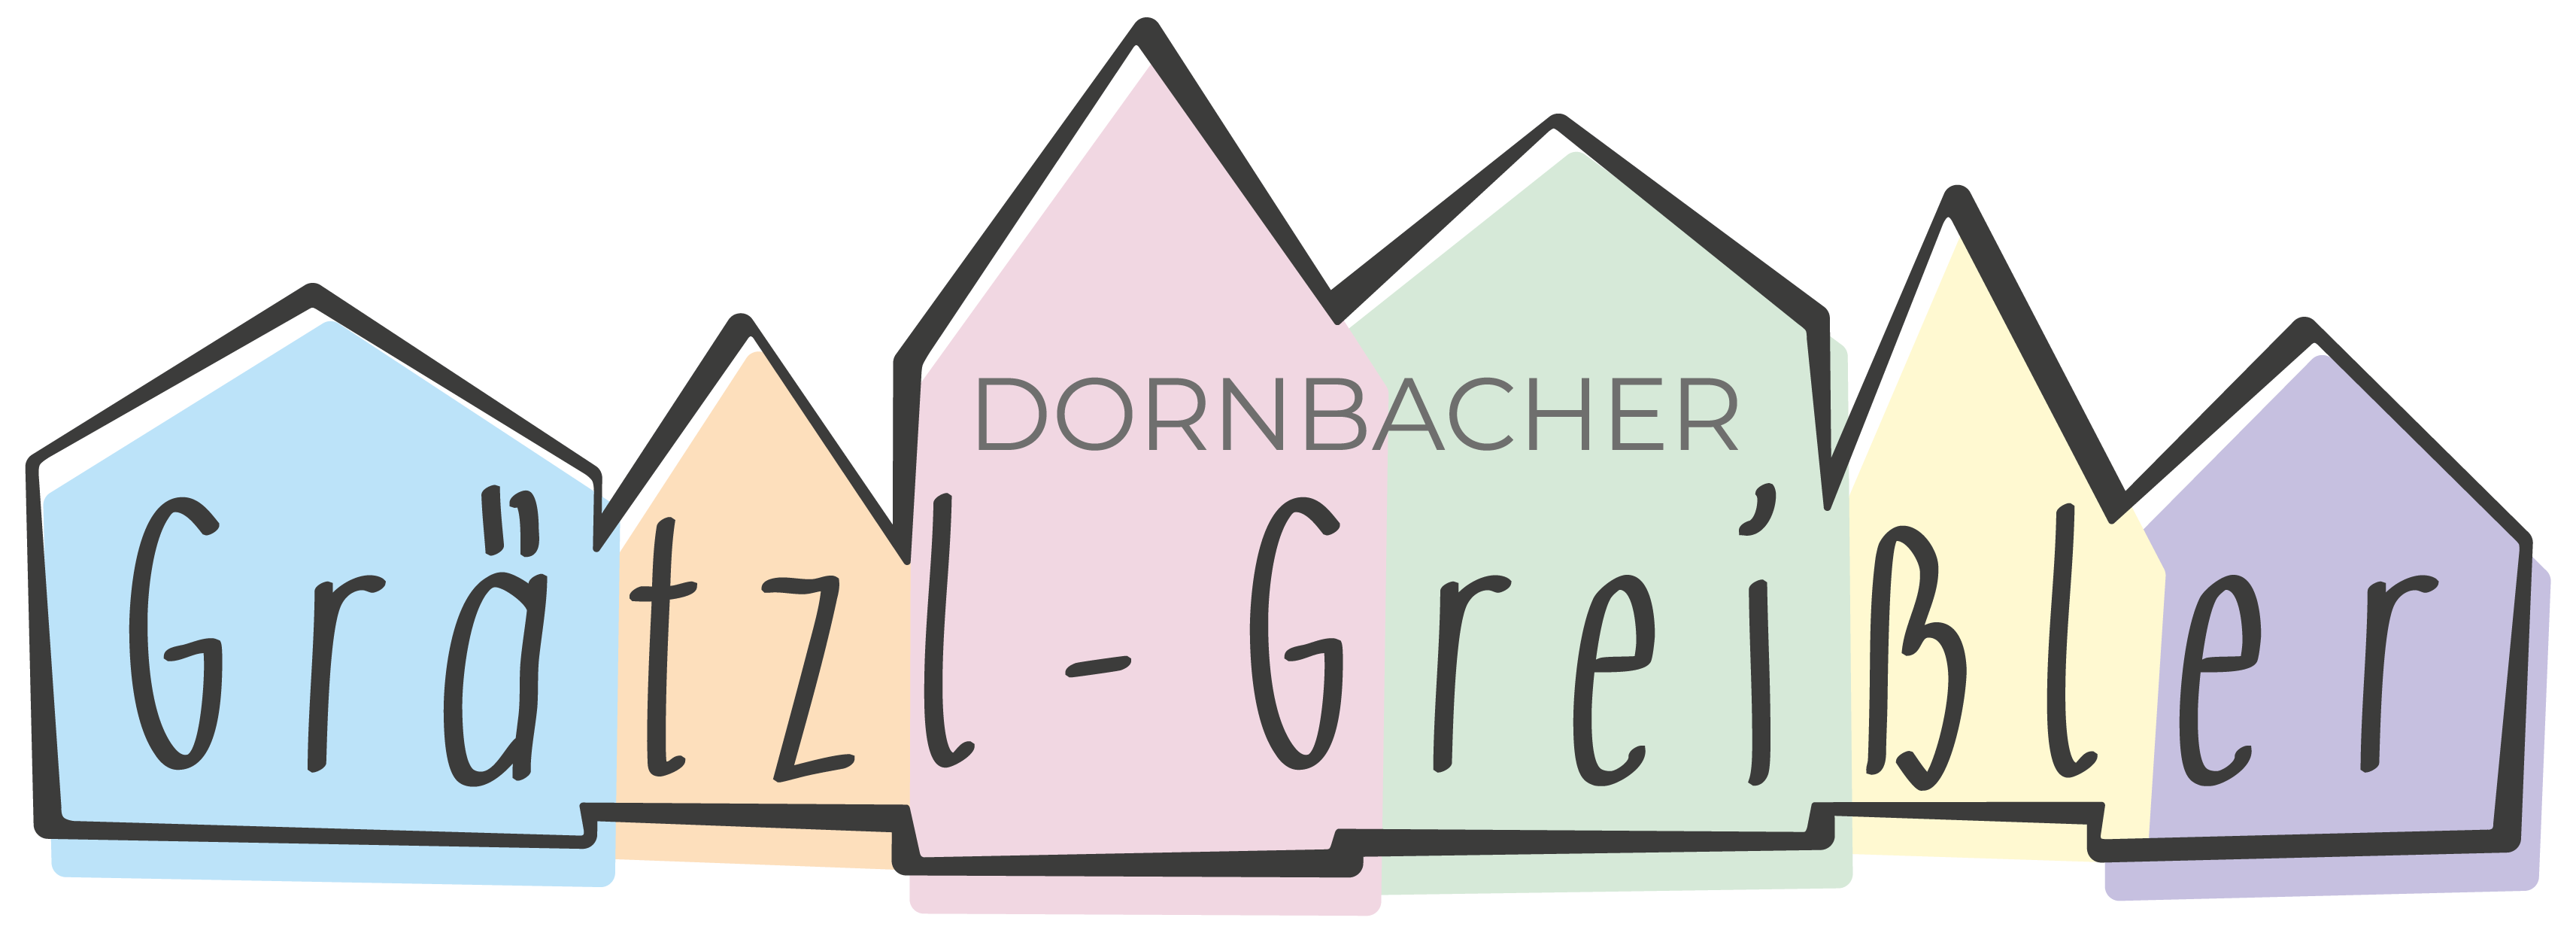 Dornbacher Grätzl-Greißler